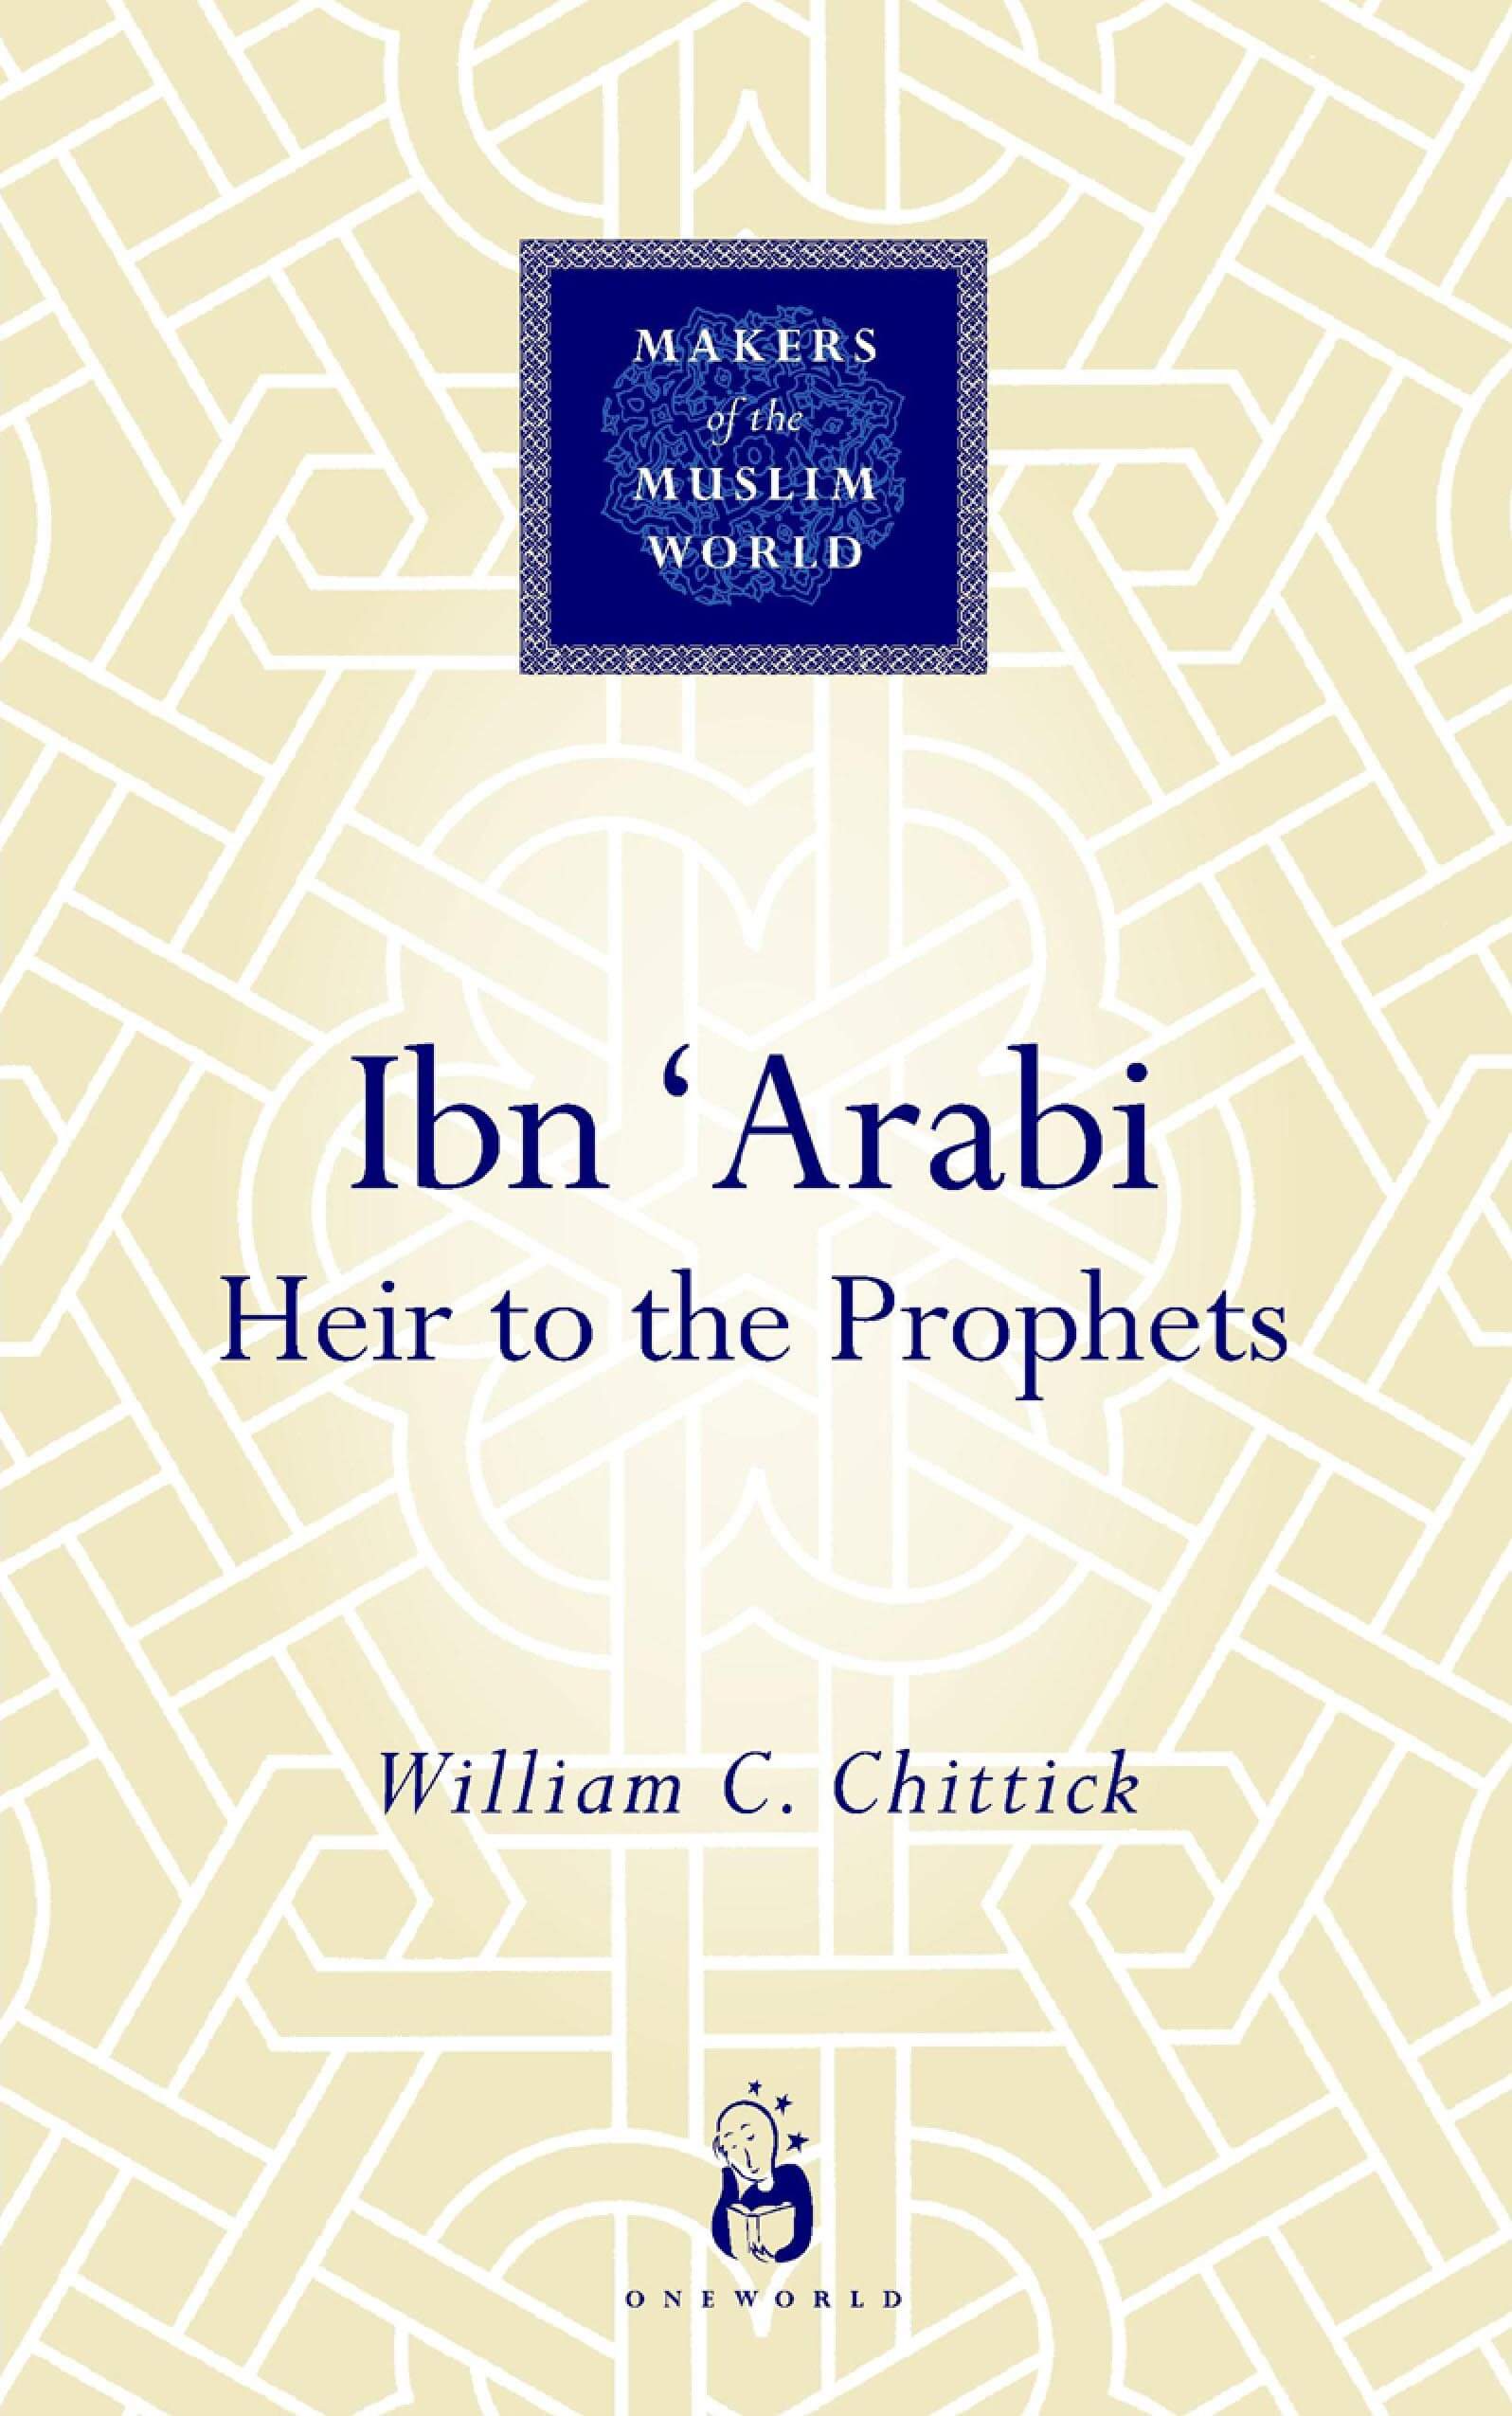 Ibn 'Arabi: Heir to the Prophets - The Revert